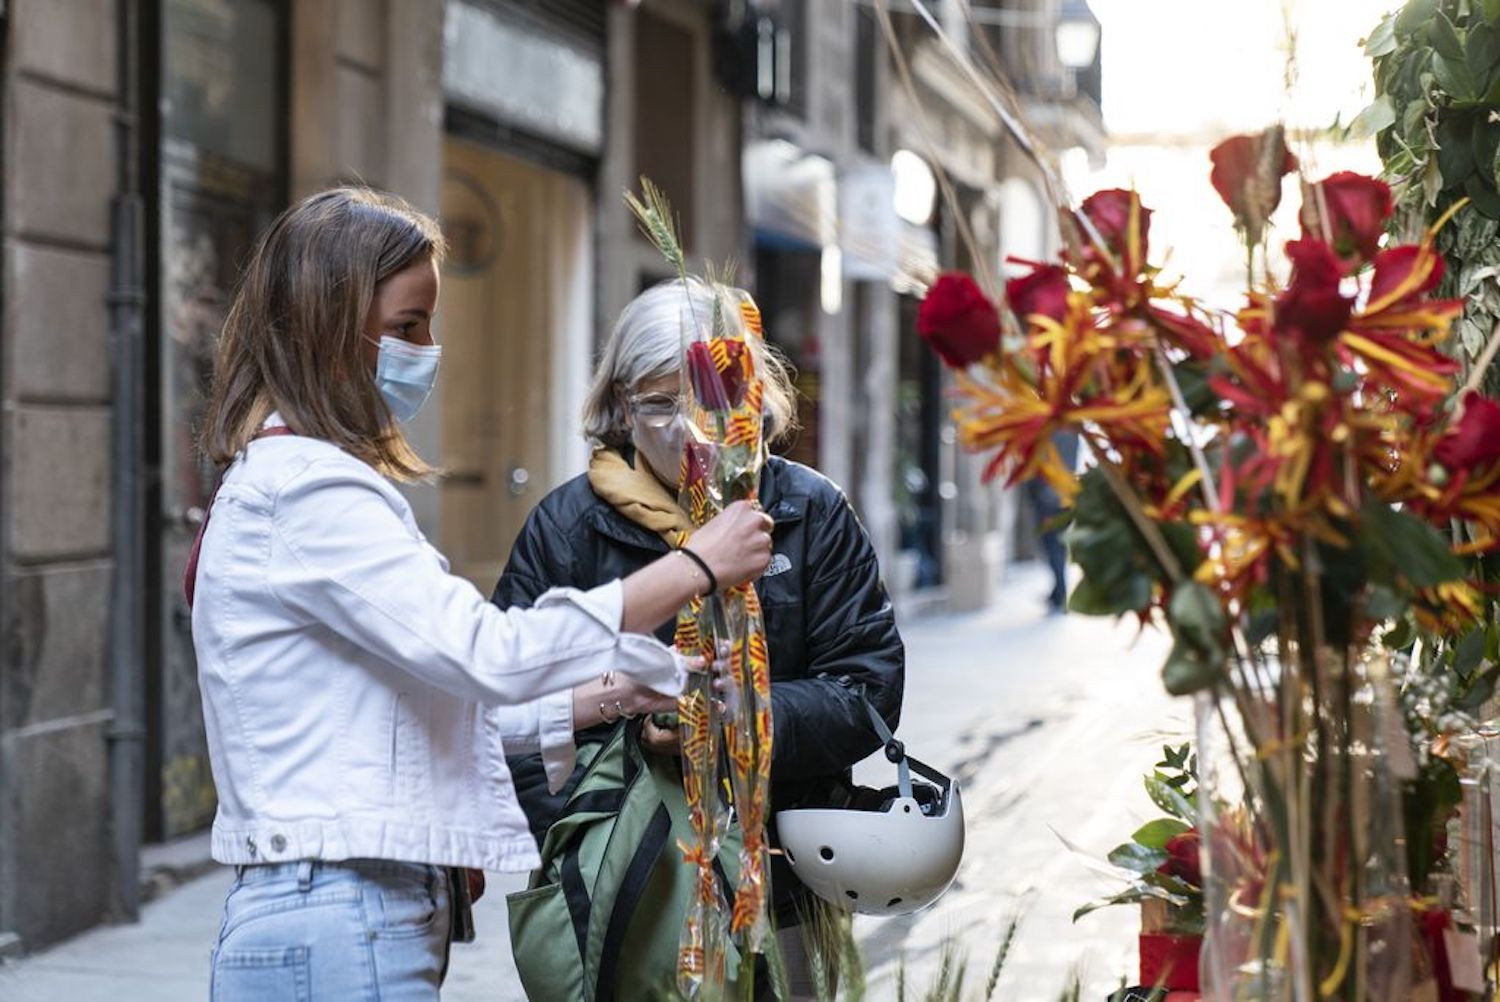 Una mujer compra una rosa por Sant Jordi / AYUNTAMIENTO DE BARCELONA